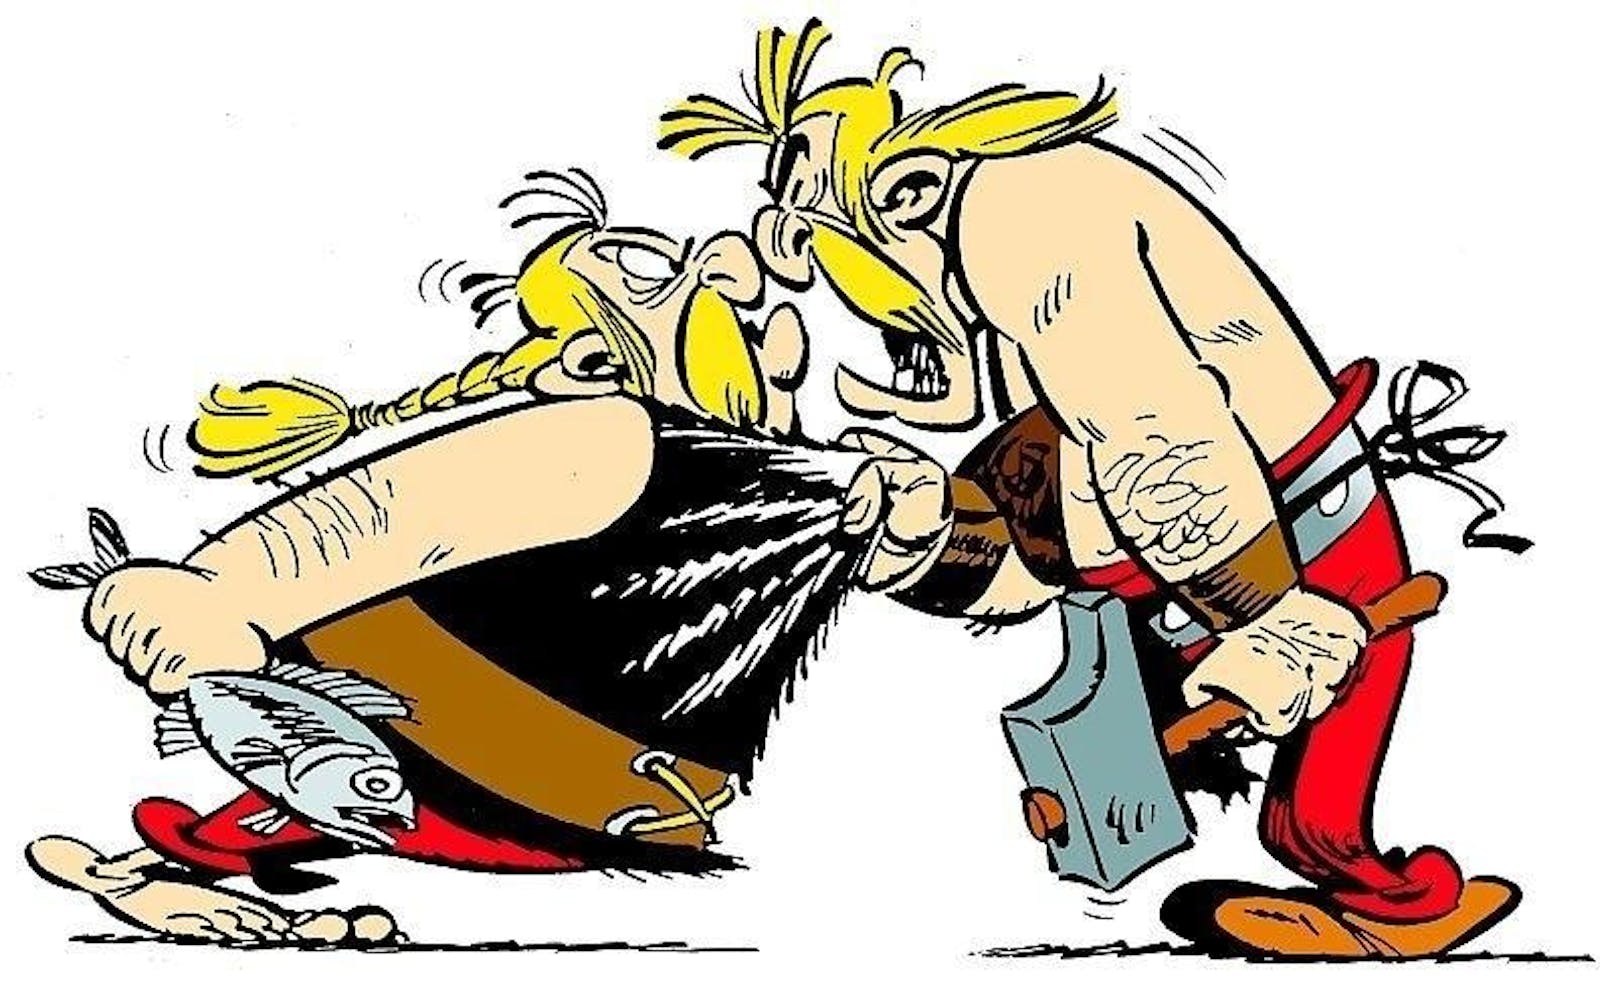 Am 15. November 2008 wird bei einer Auktion in Paris eine Seite aus Astérix gladiateur / Asterix als Gladiator zu einem Rekordpreis versteigert. Das Blatt ist 39 x 47,5 cm groß, schwarz-weiß und erschien als Seite 41 im Jahr 1962 in der Nummer 165 von Pilote. Das Blatt bringt 312.500 Euro ein.